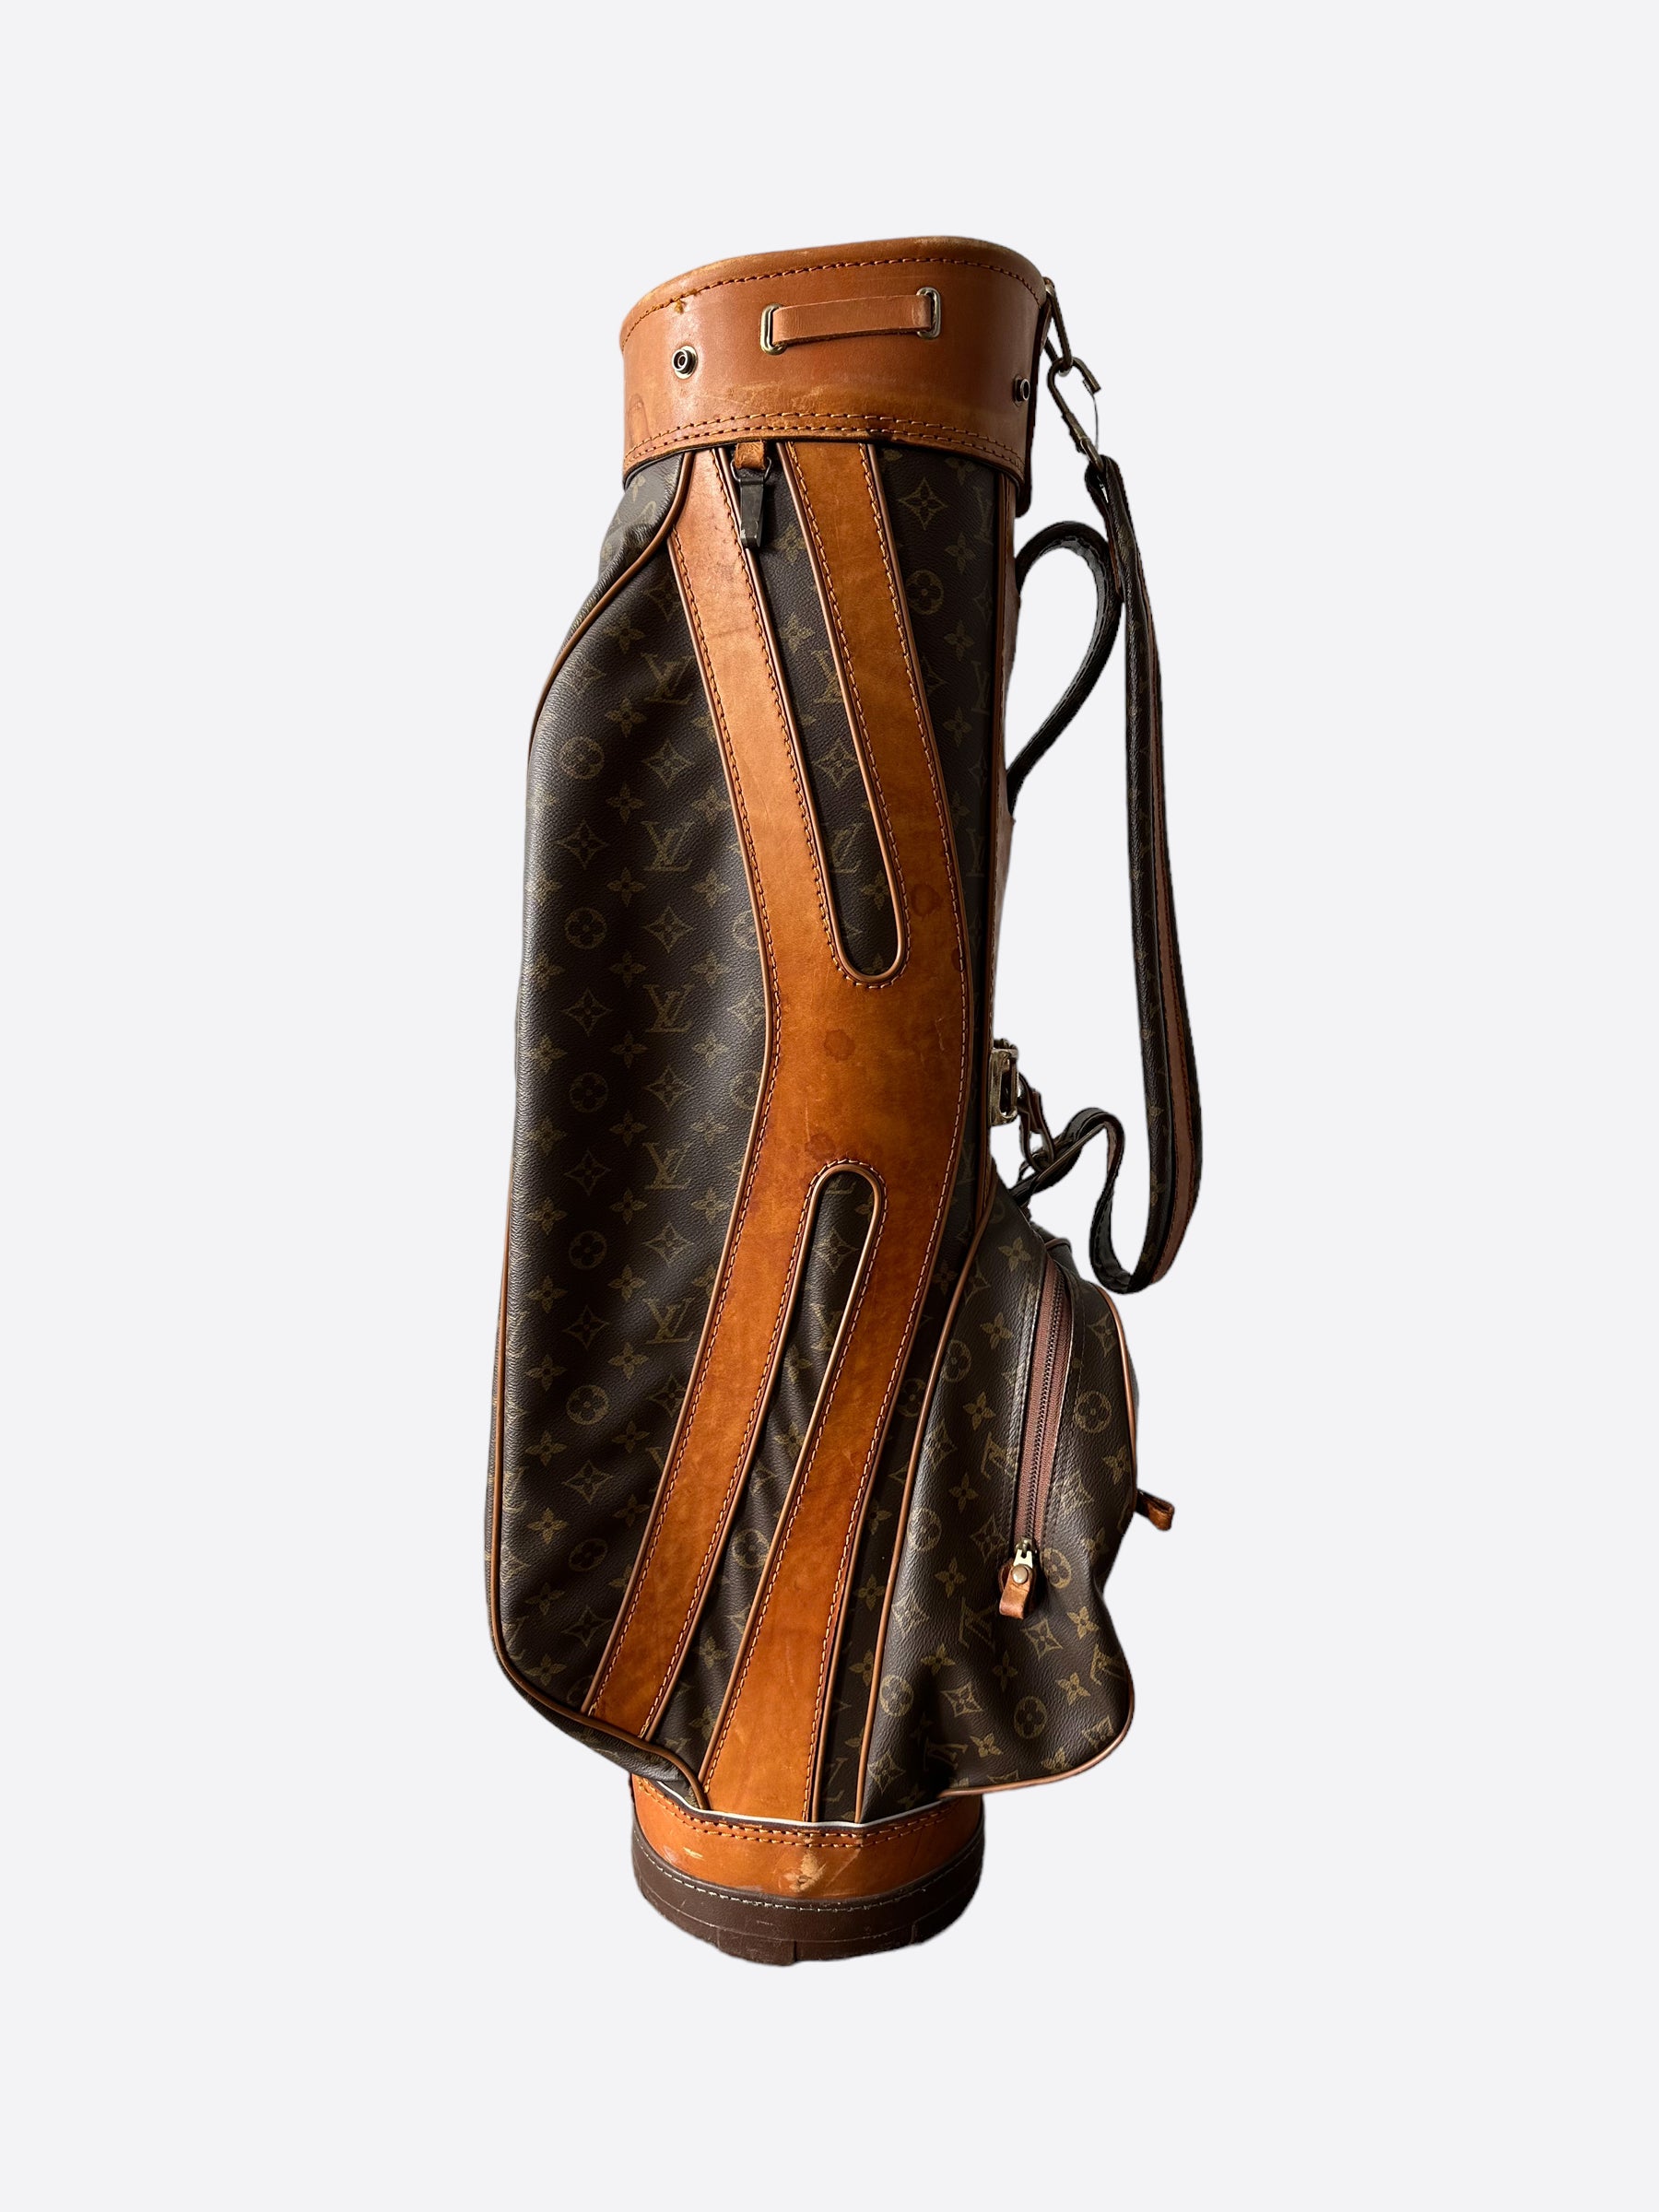 Sold at Auction: Vintage Louis Vuitton Golf Bag